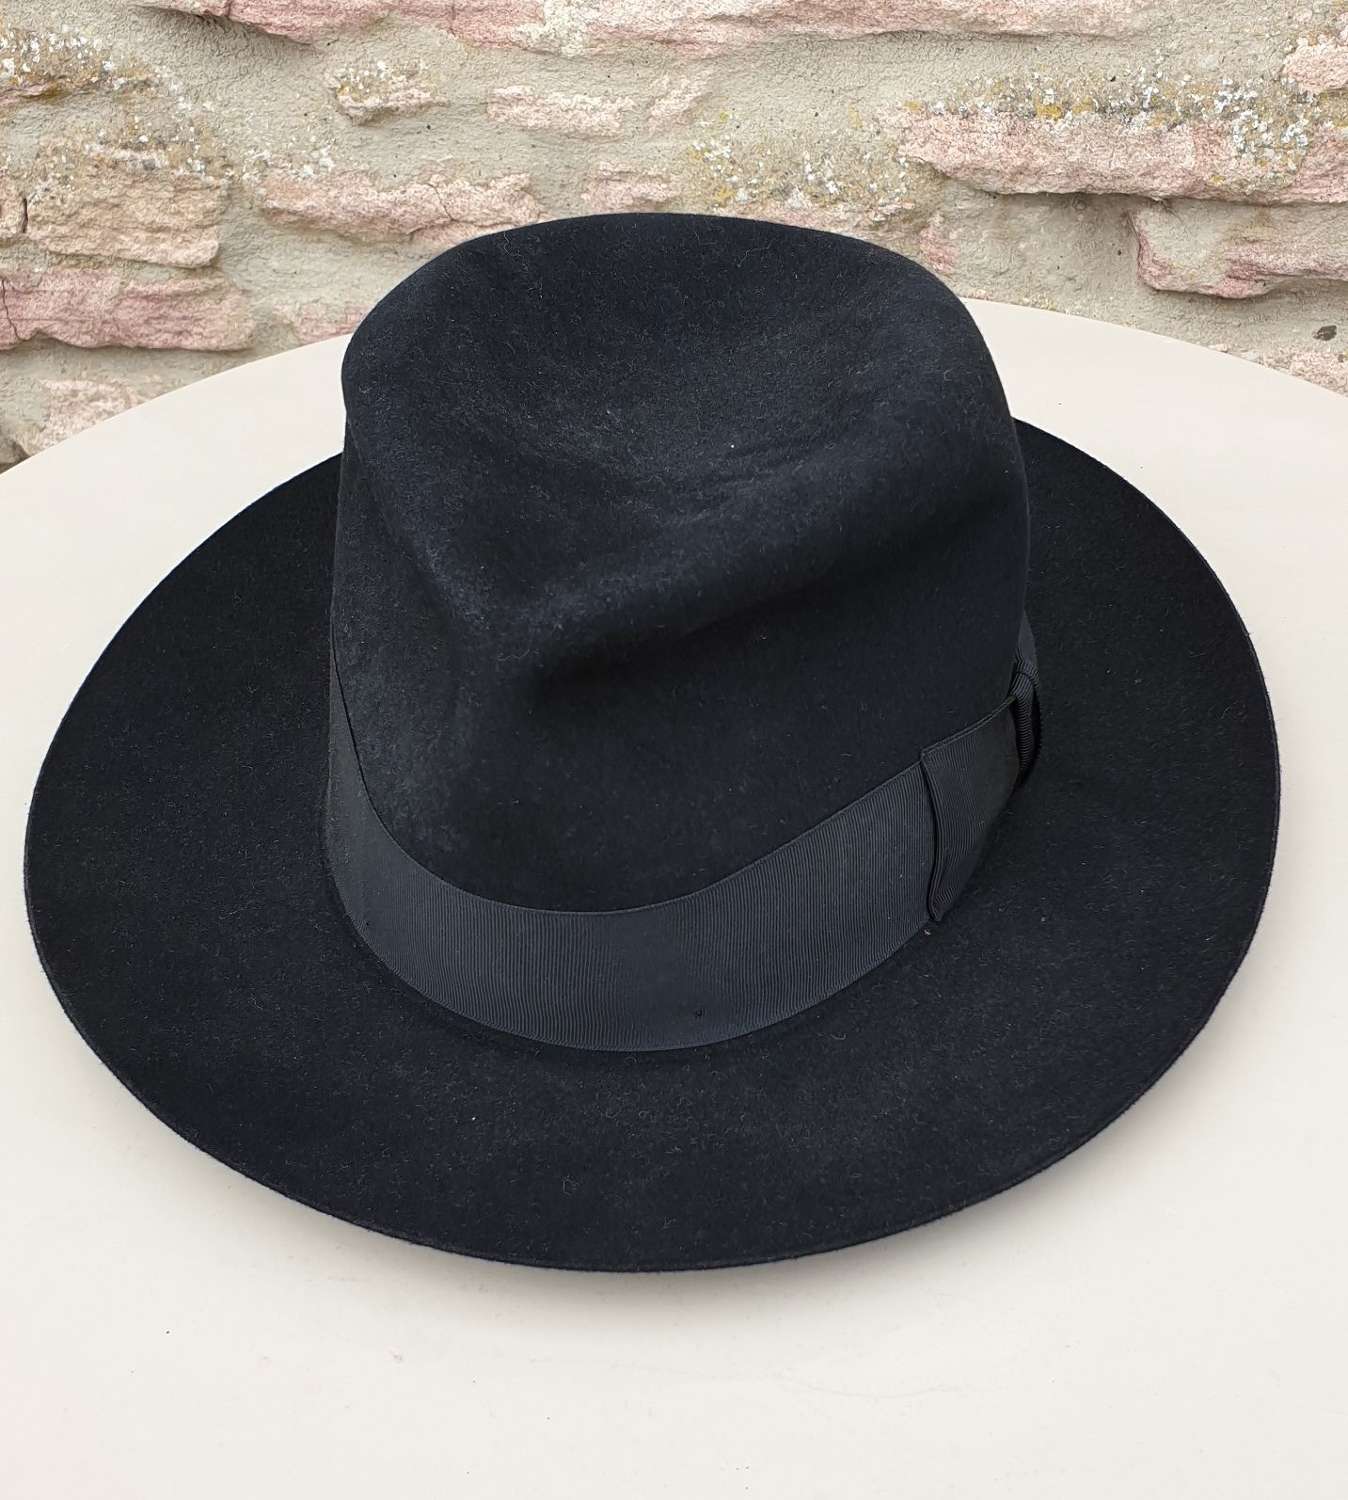 Homburg/Fedora Gentleman’s Hat